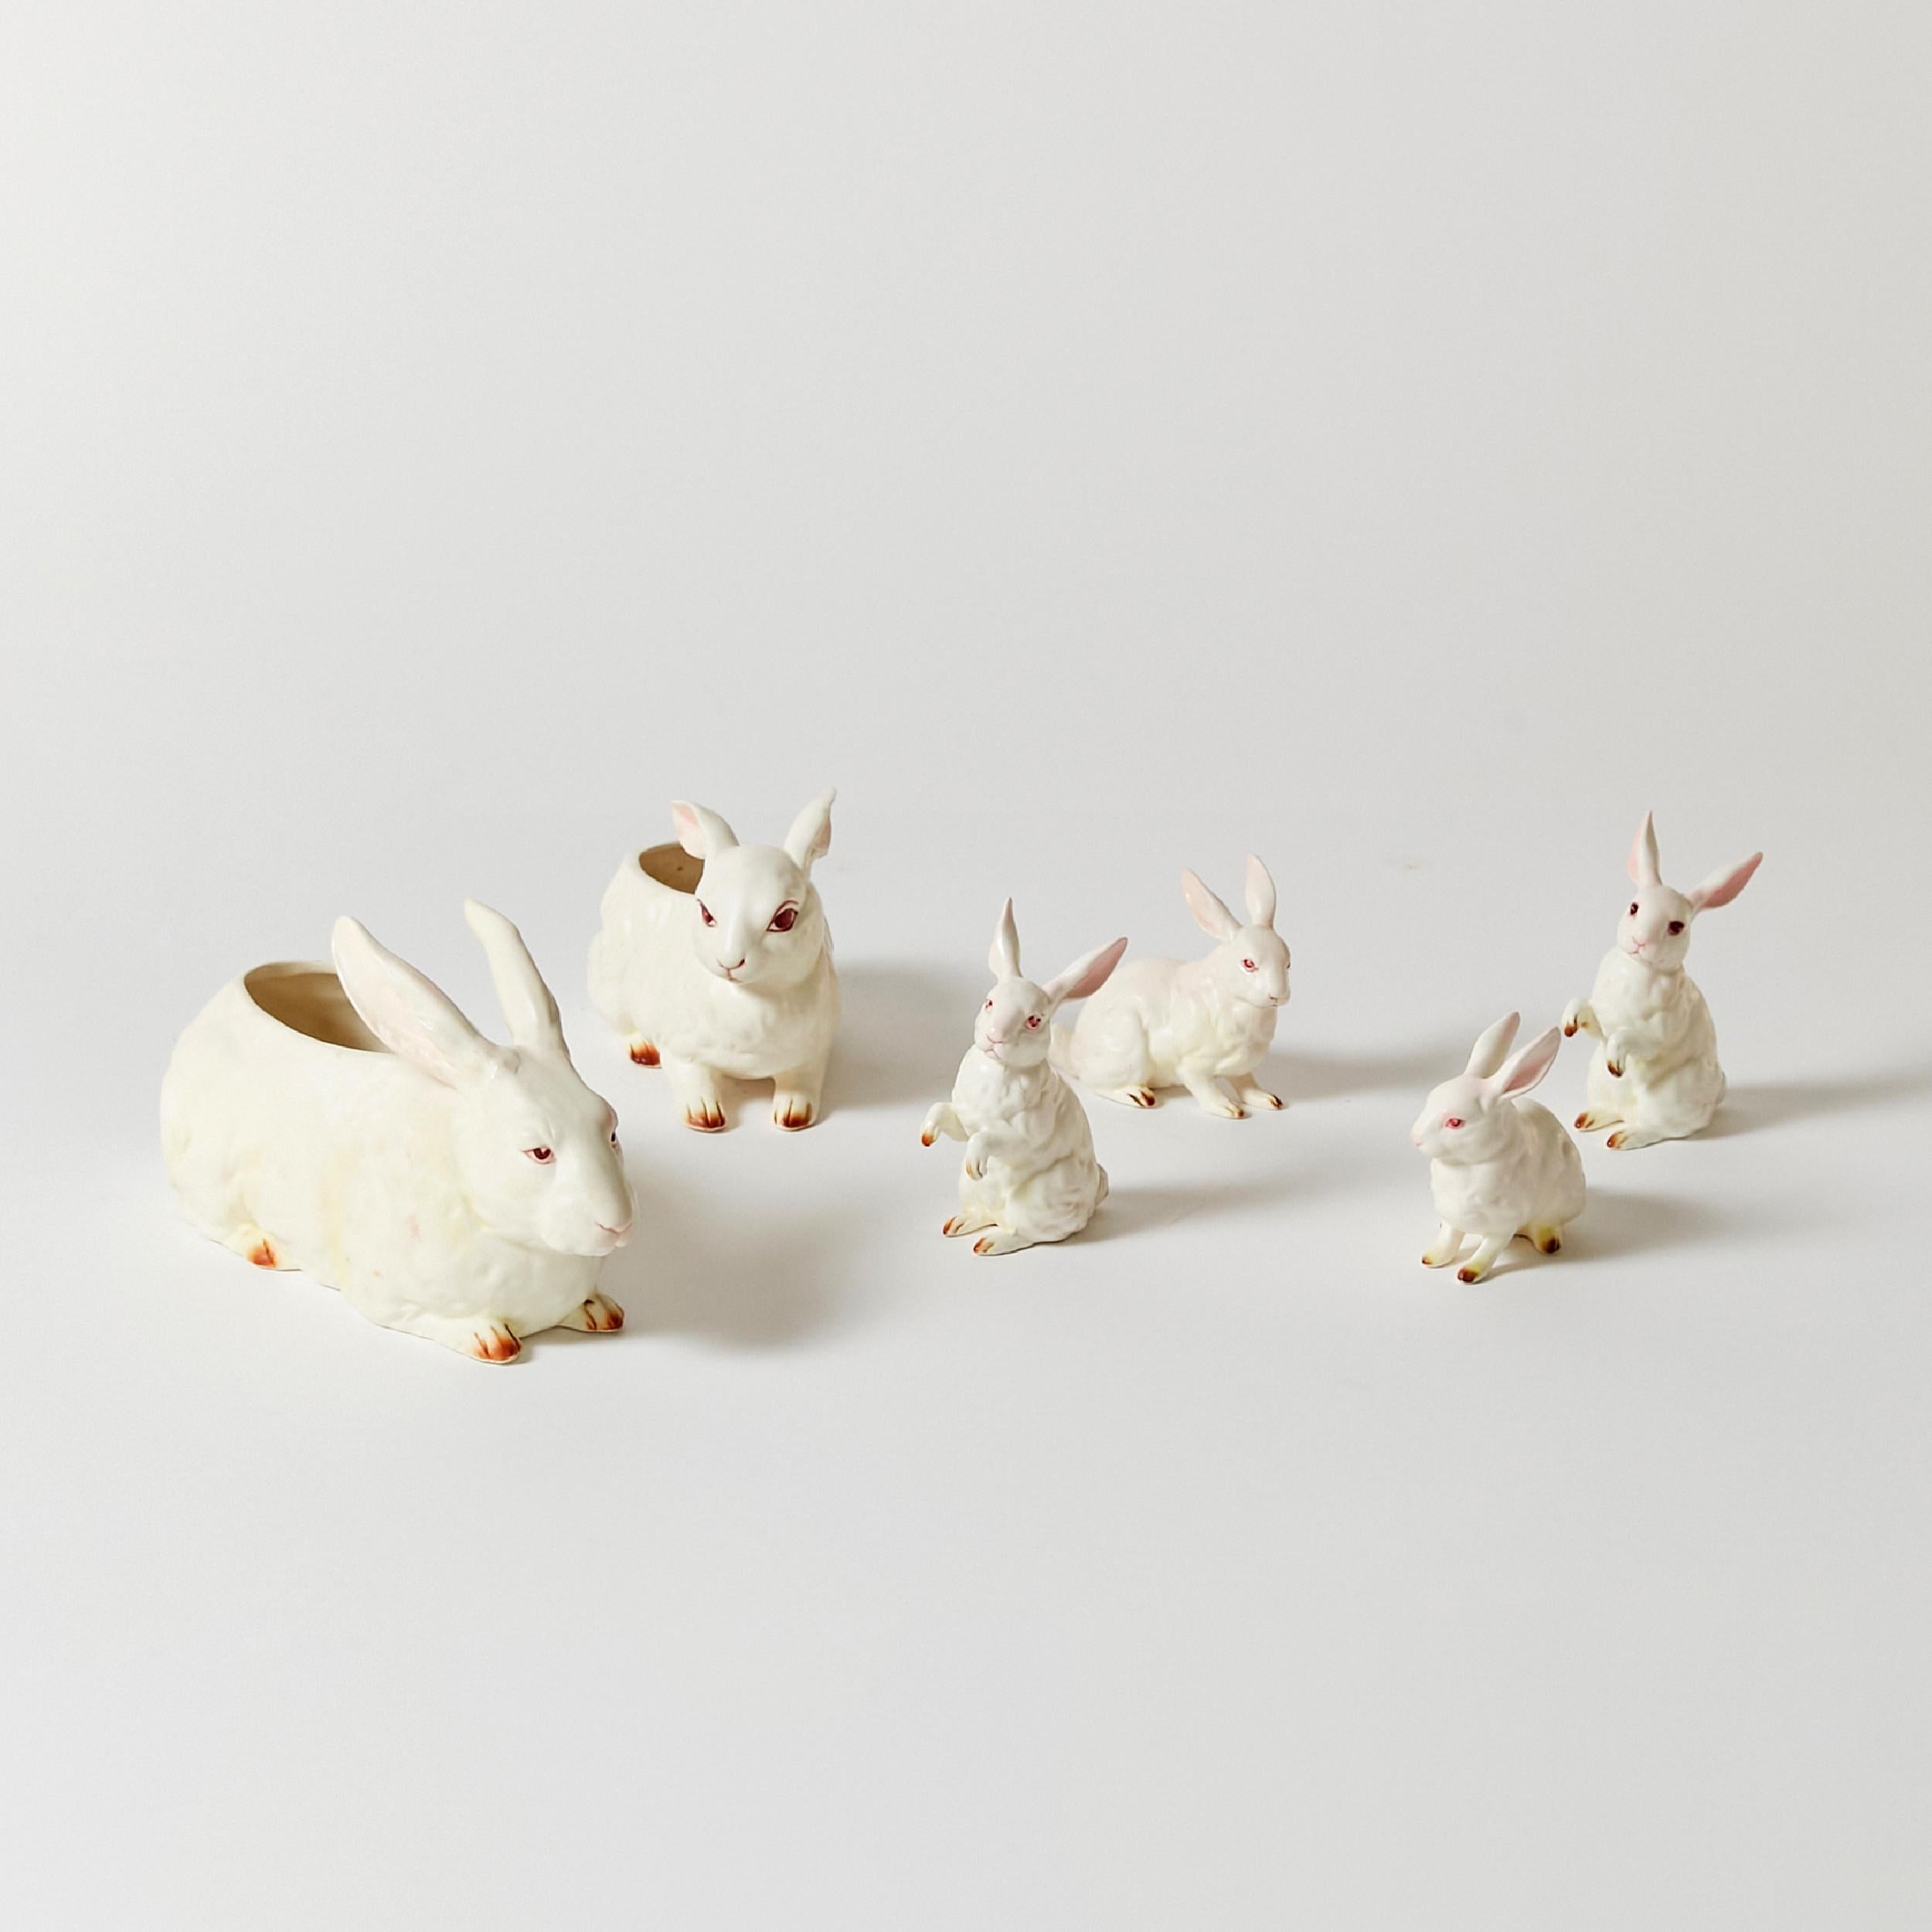 Ensemble de dix lapins Lefton en porcelaine peints à la main et de tailles différentes. Les plus gros lapins sont creux et peuvent servir de vase peu profond ou de bol à bonbons.
Ces pièces ont été fabriquées au Japon en 1960.
Gamme de